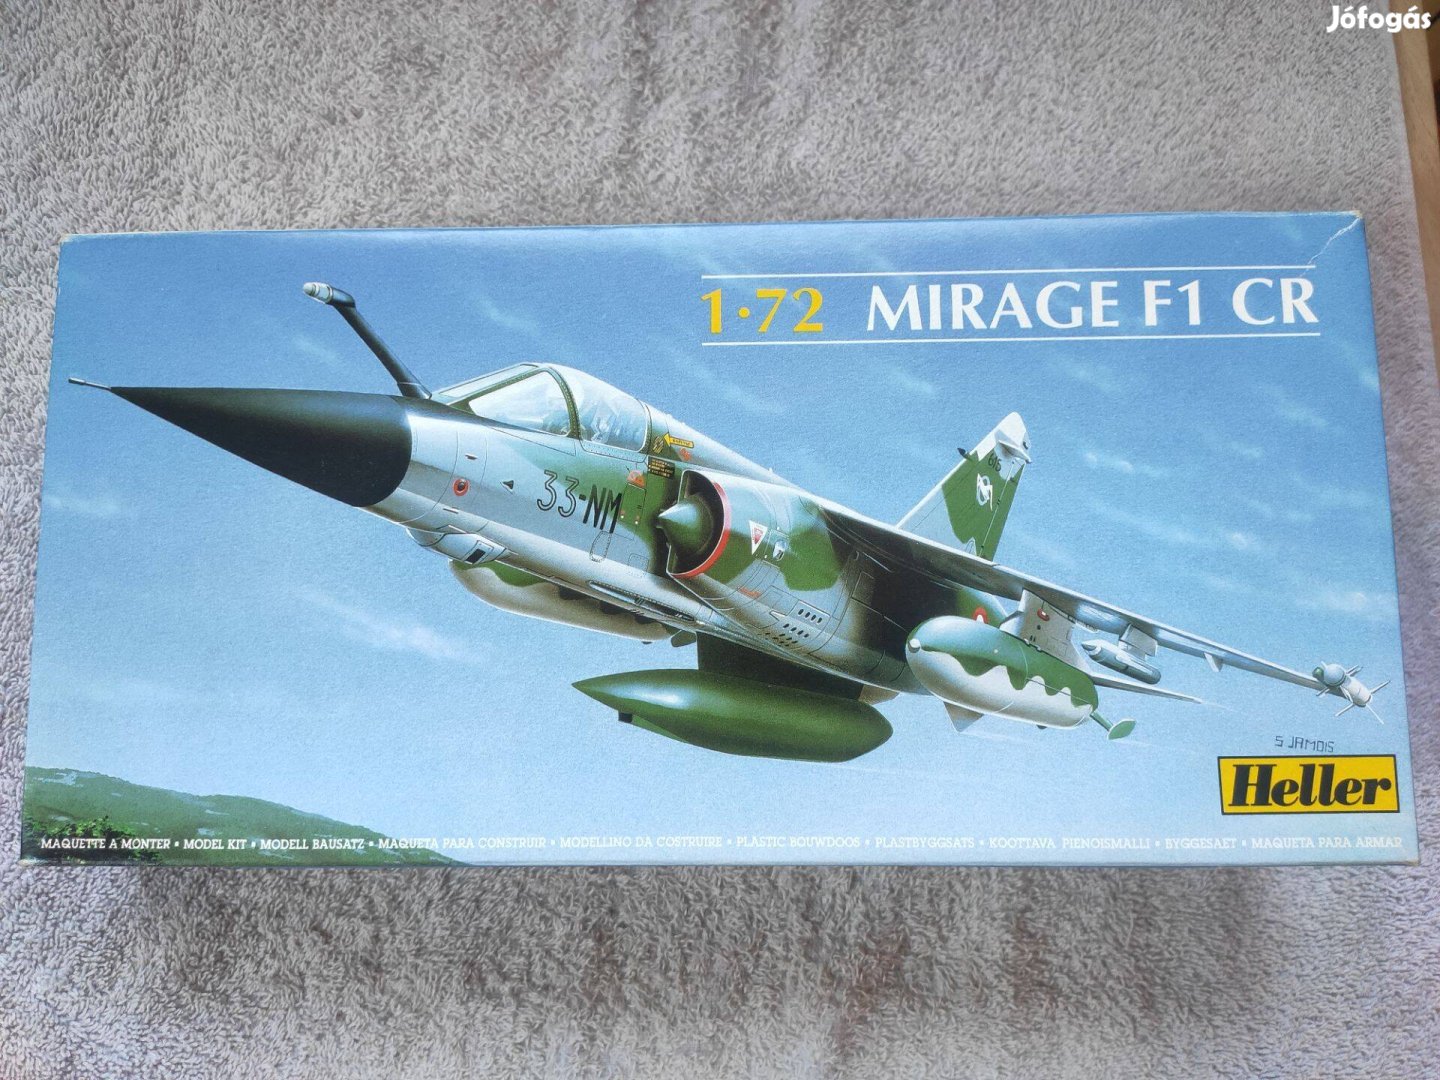 Heller Mirage F1 CR makett, 1:72, félbehagyott